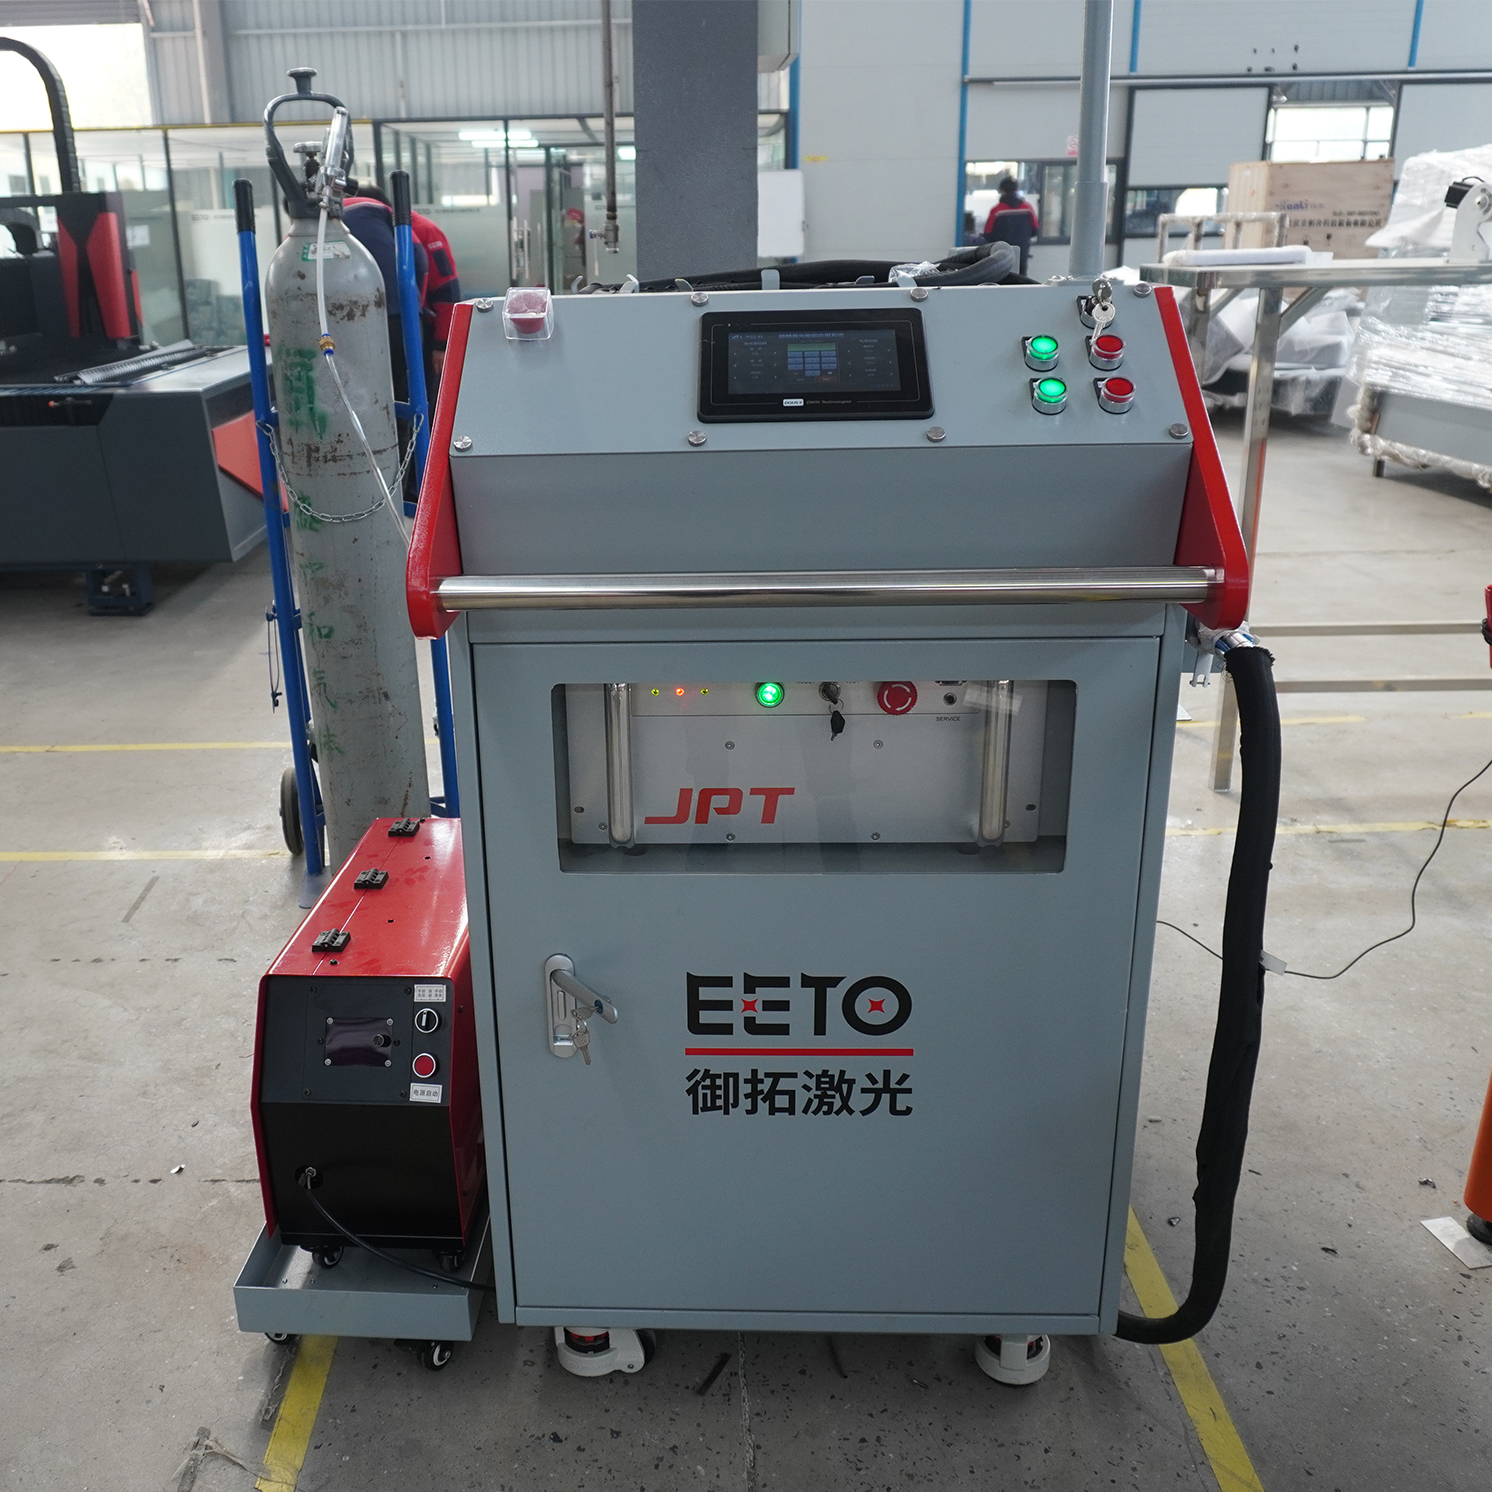 "EETO LASER Přenosný laserový svařovací stroj s vláknem pro svařování kovů Cena na prodej"